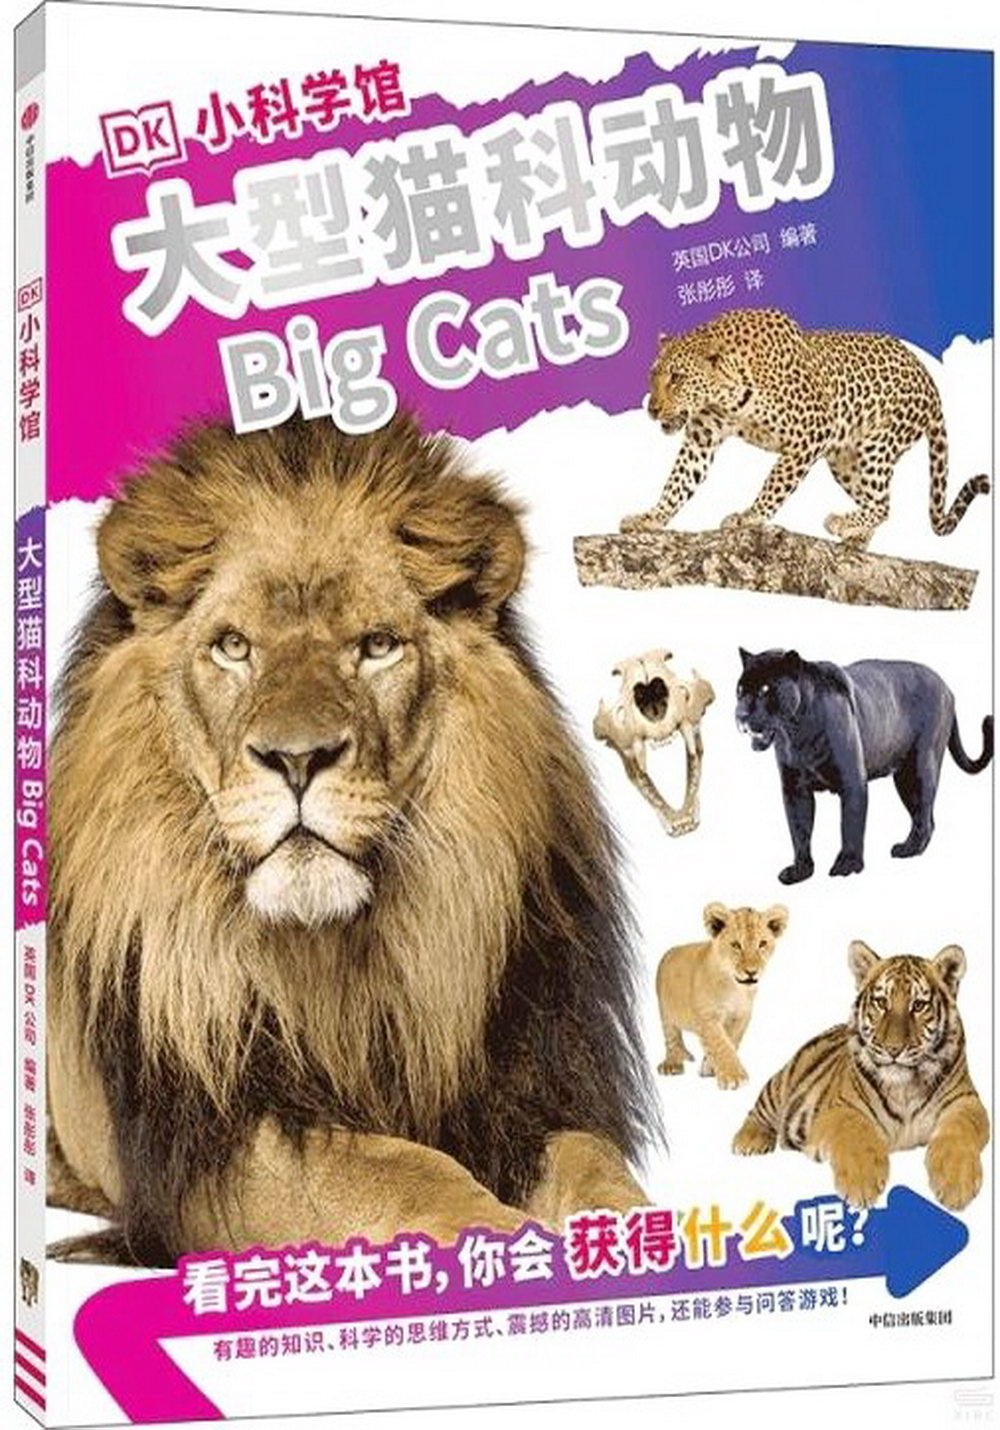 DK小科學館：大型貓科動物